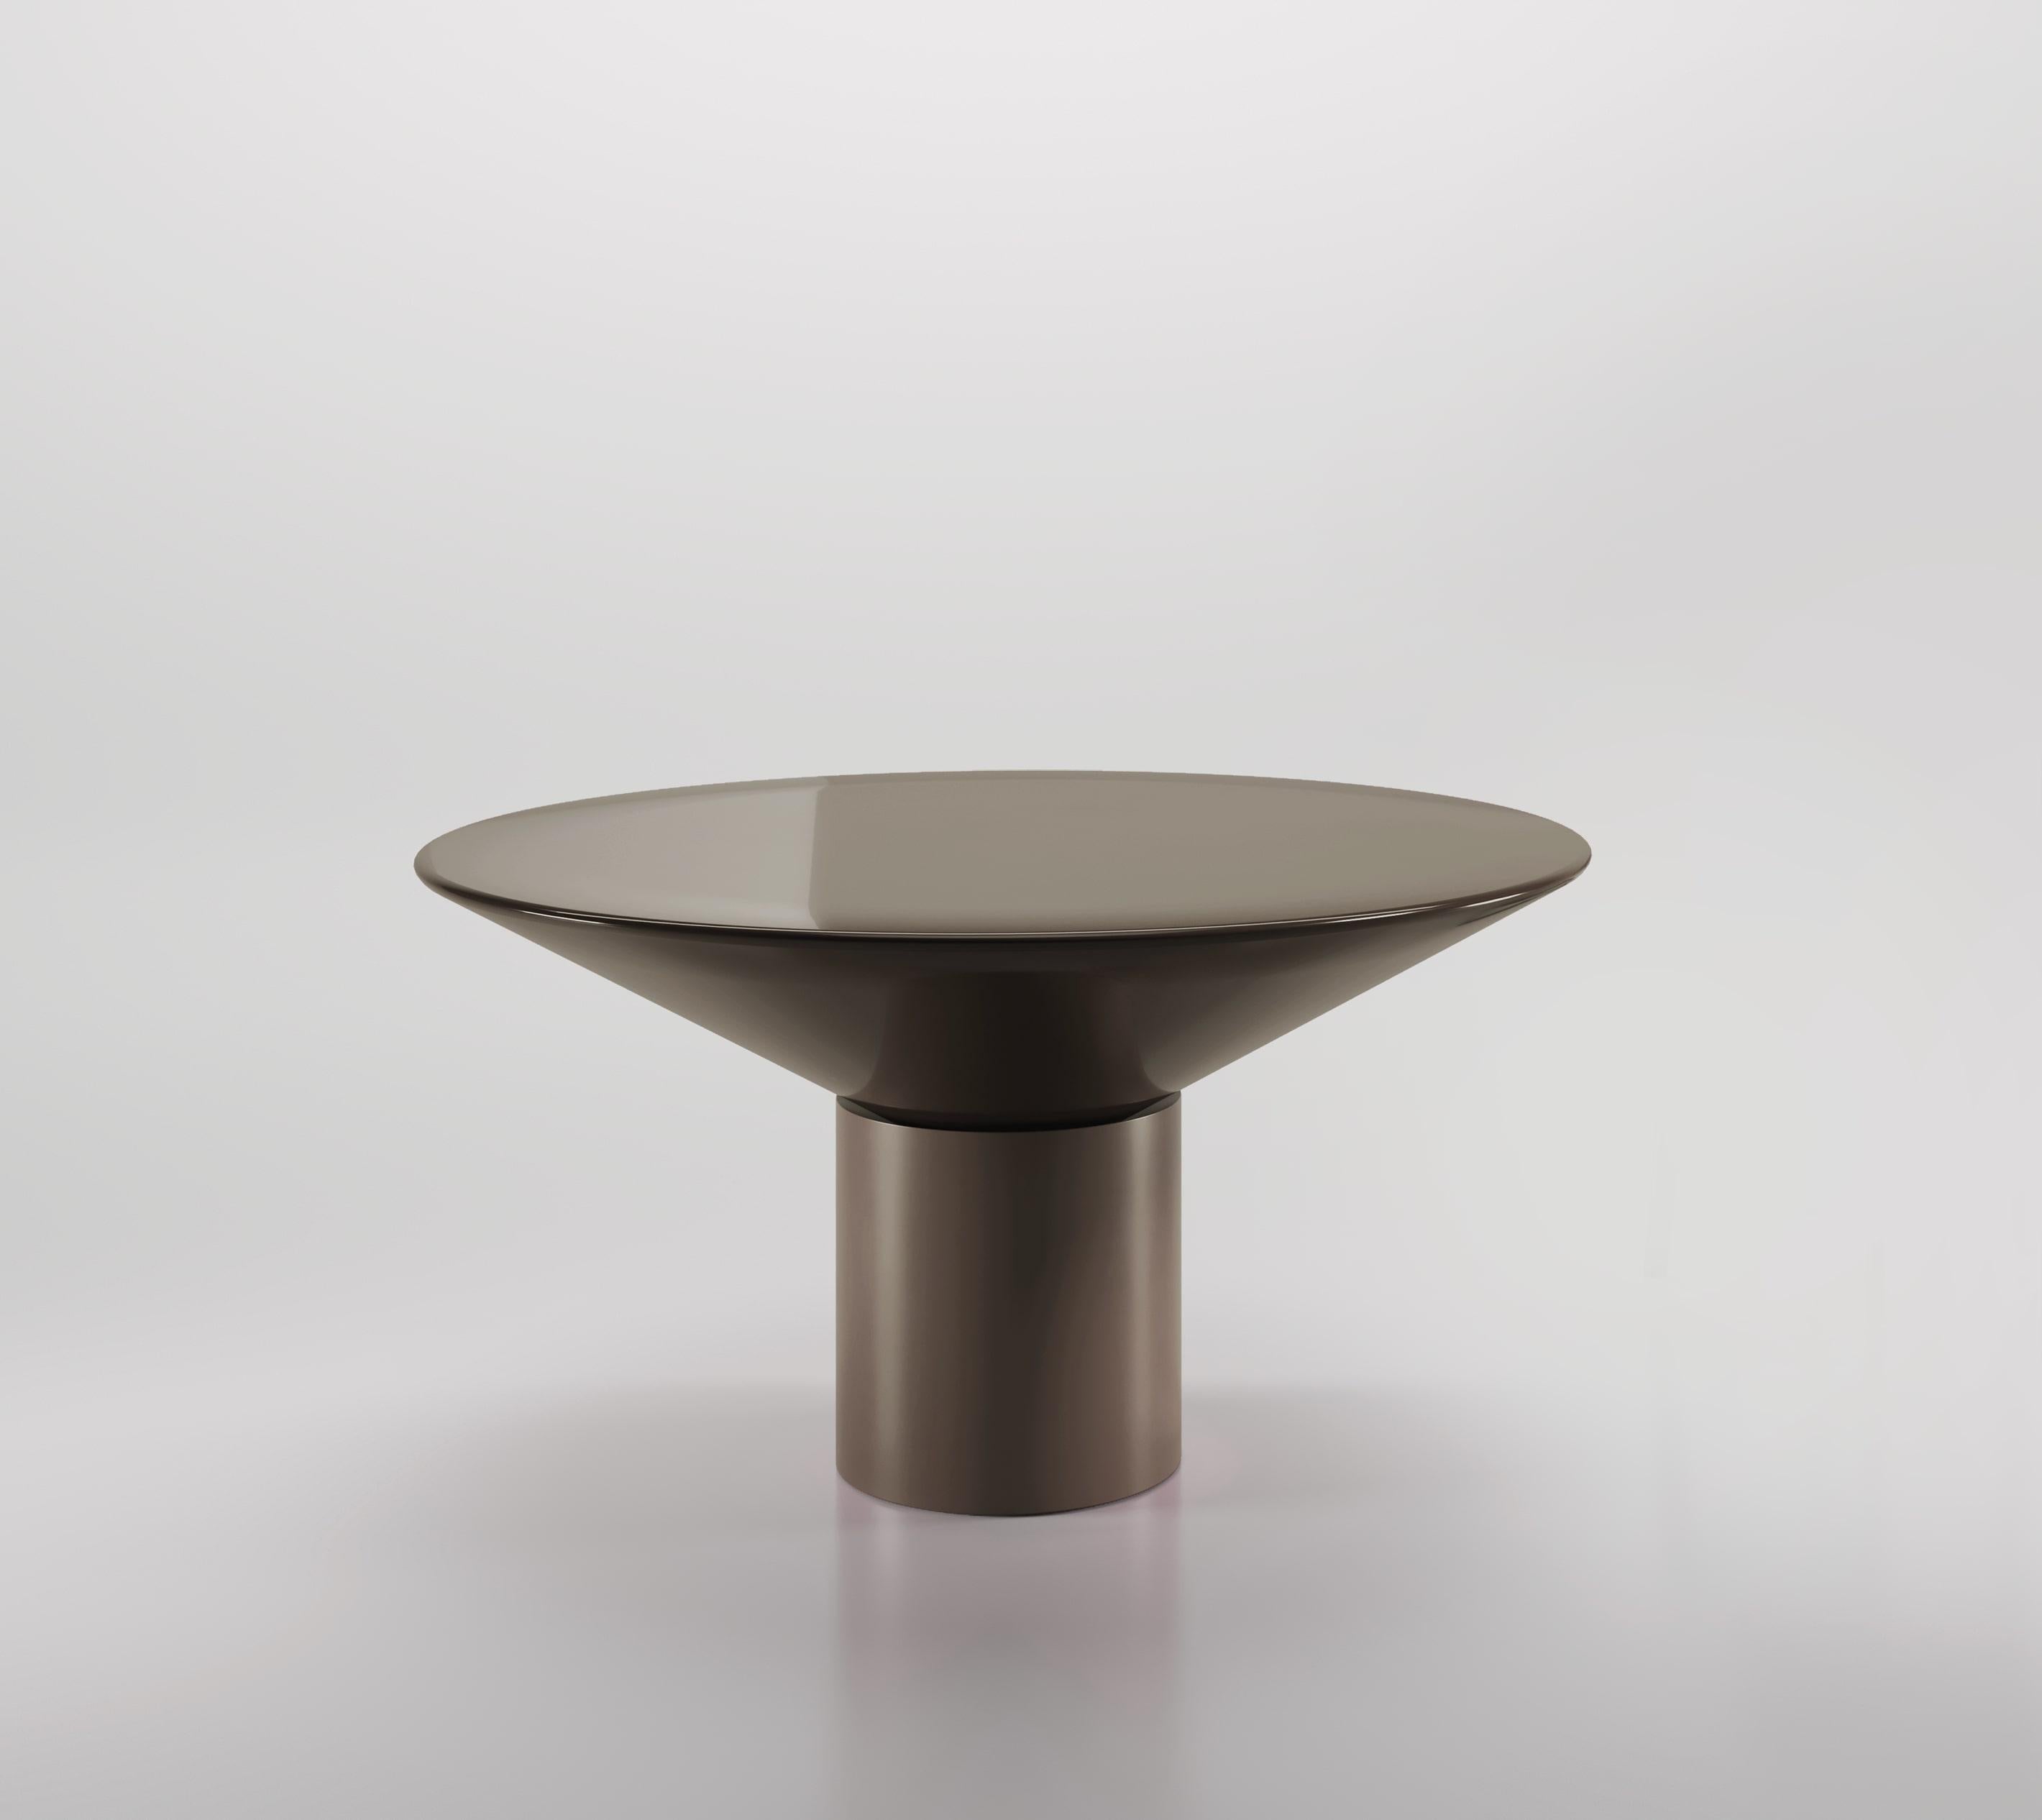 Silo Dining Table ist ein eindrucksvolles Möbelstück, das die üblichen Eigenschaften eines Esstisches in Frage stellt. Beim Silo Dining Table kommunizieren Untergestell und Tischplatte harmonisch miteinander und bilden ein ebenso auffälliges wie